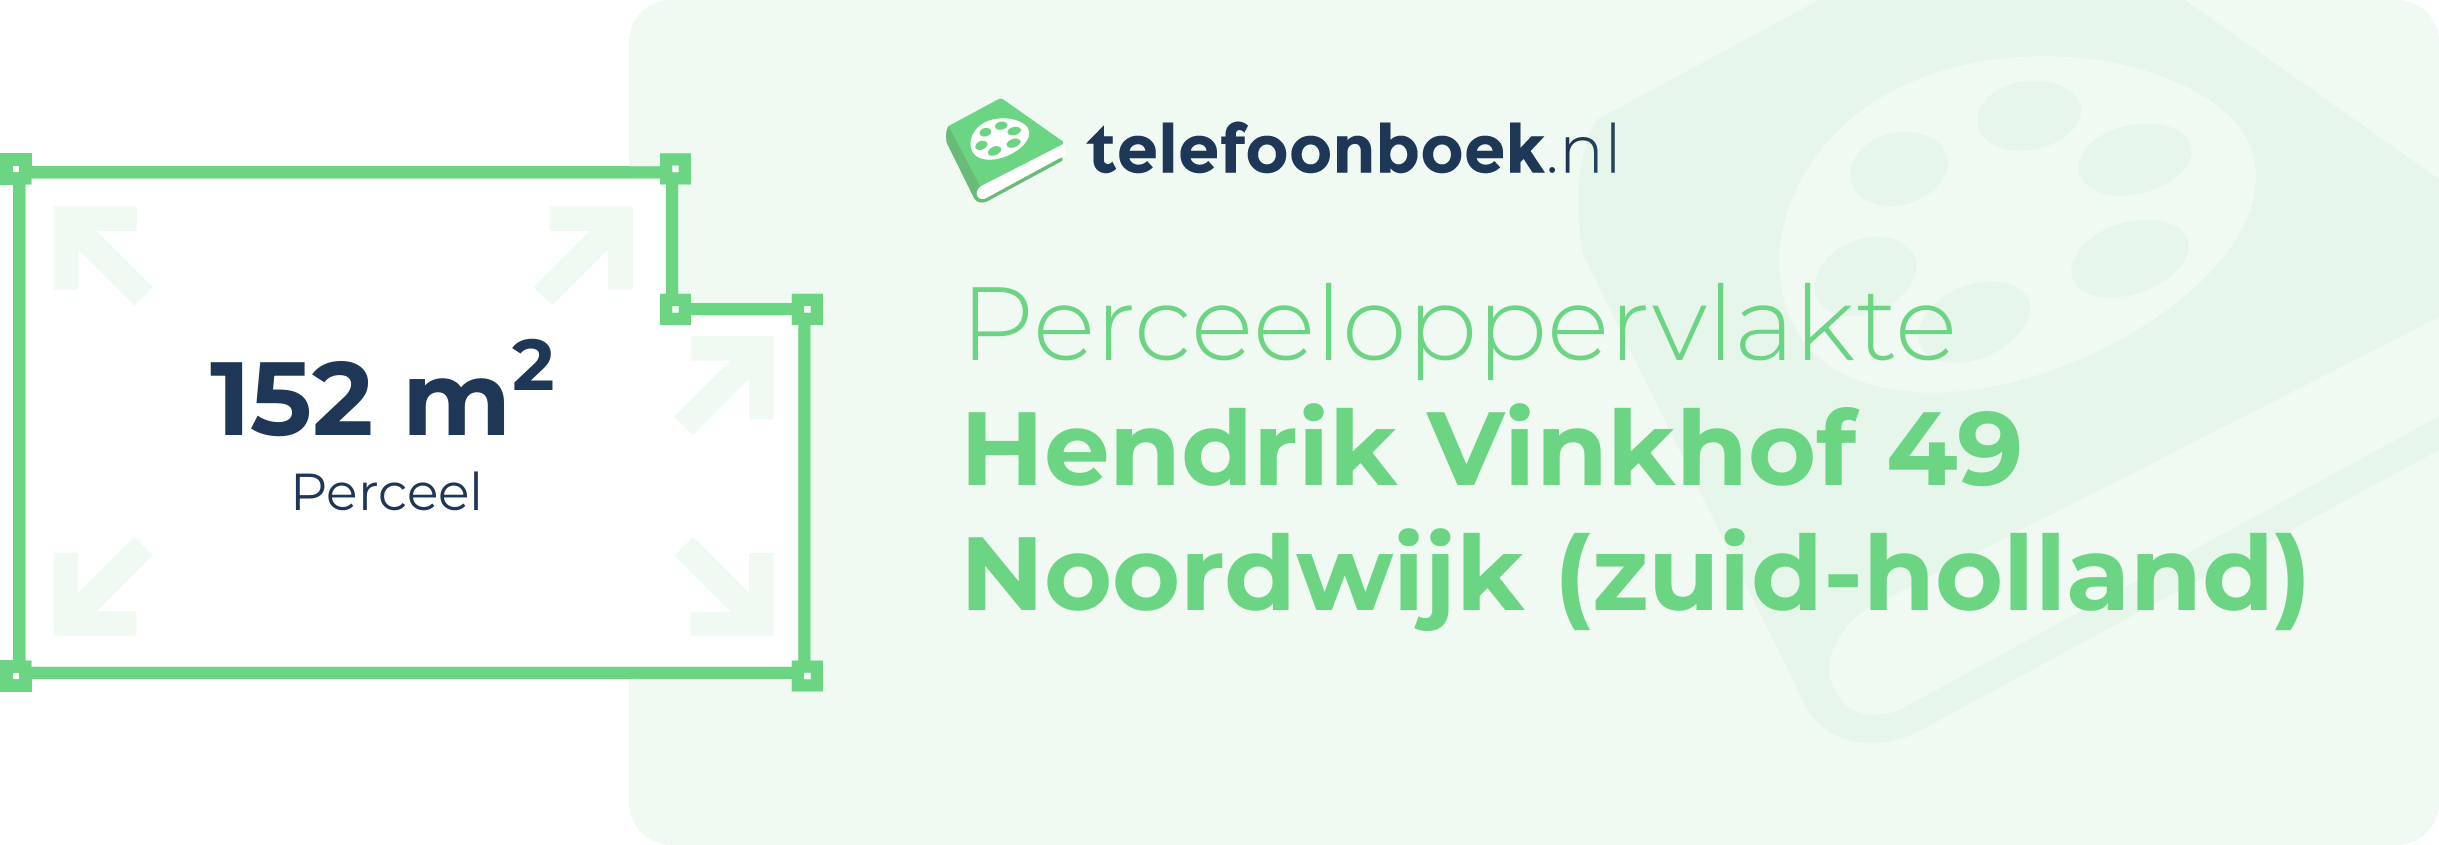 Perceeloppervlakte Hendrik Vinkhof 49 Noordwijk (Zuid-Holland)